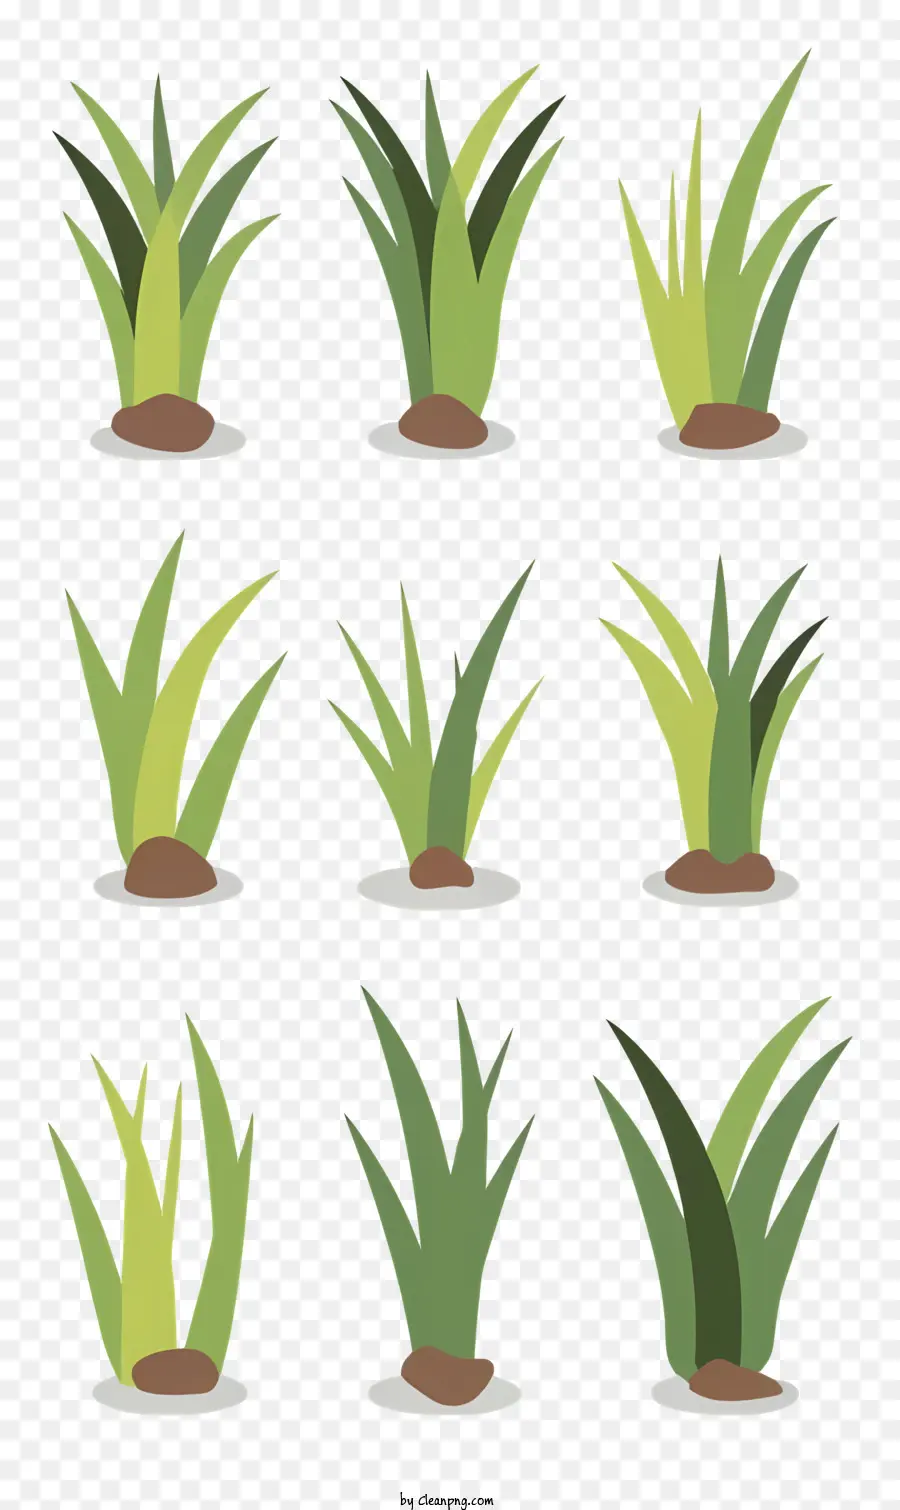 piante verdi del suolo tipi di piante forme dimensioni - Varie piante verdi disposte in griglia visivamente piacevole